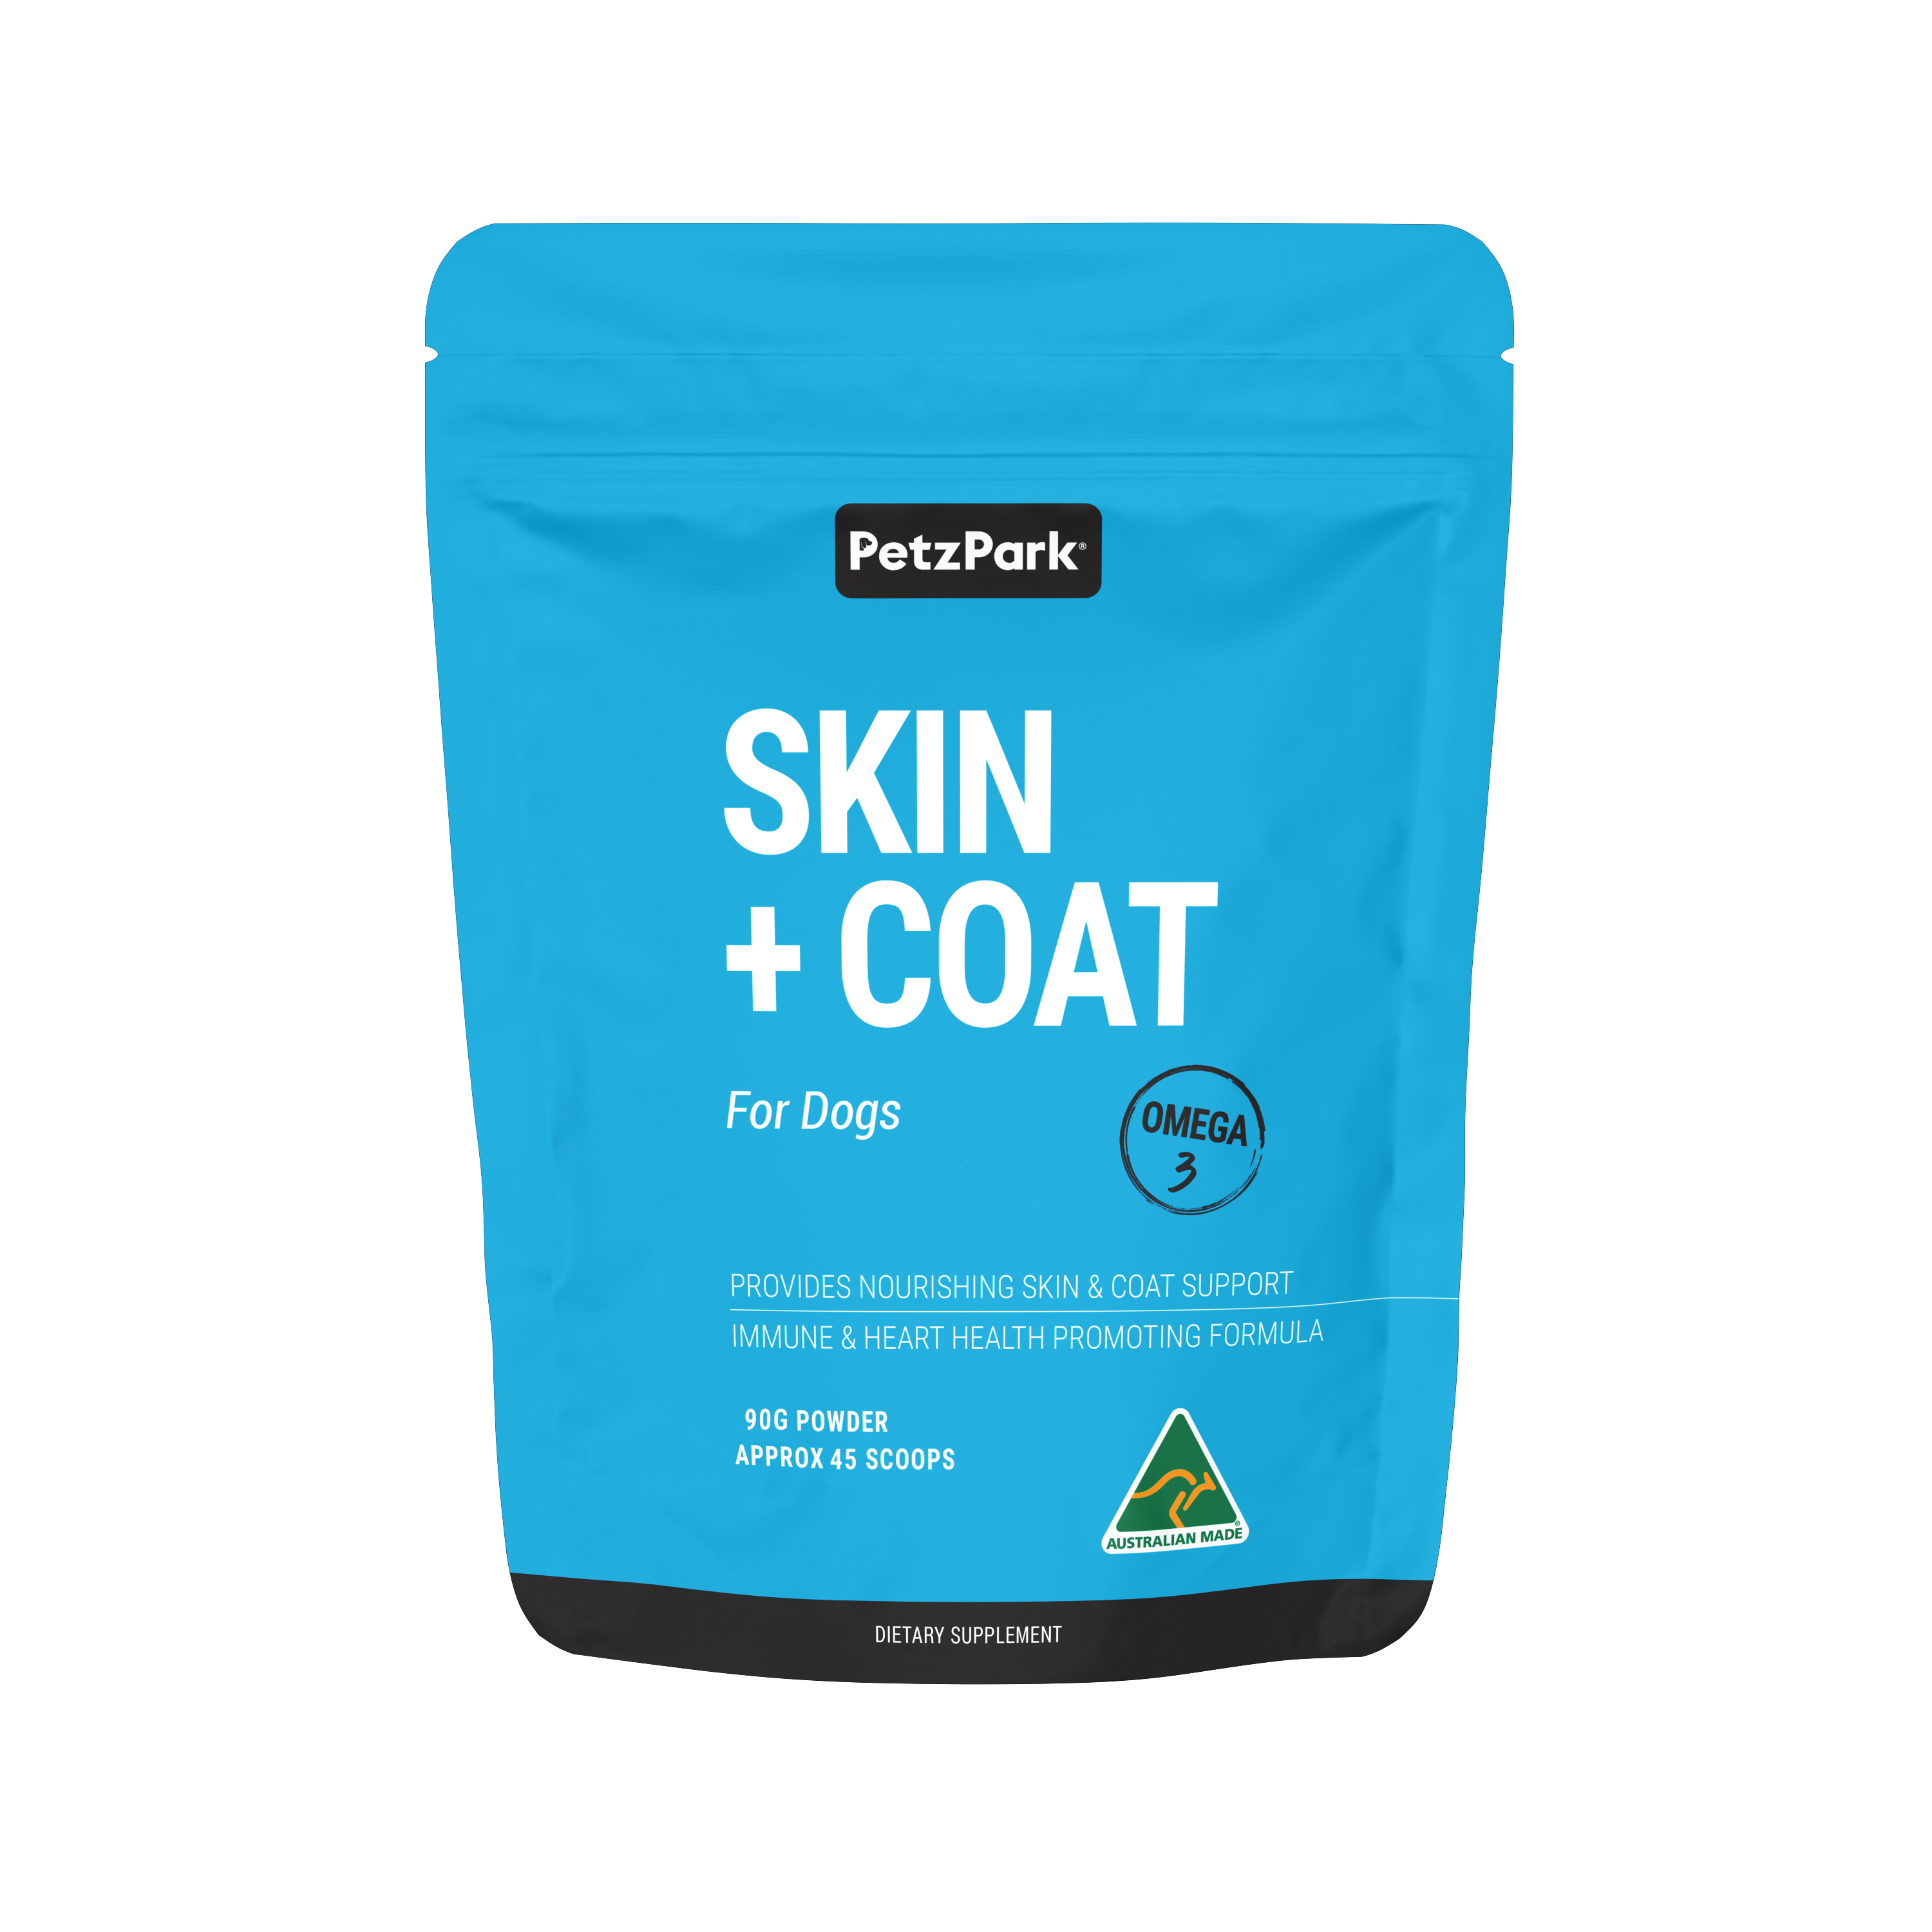 Petz Park’s Skin + Coat for Dogs, omega-3 powder supplement for dog’s skin, coat, immune & heart health.